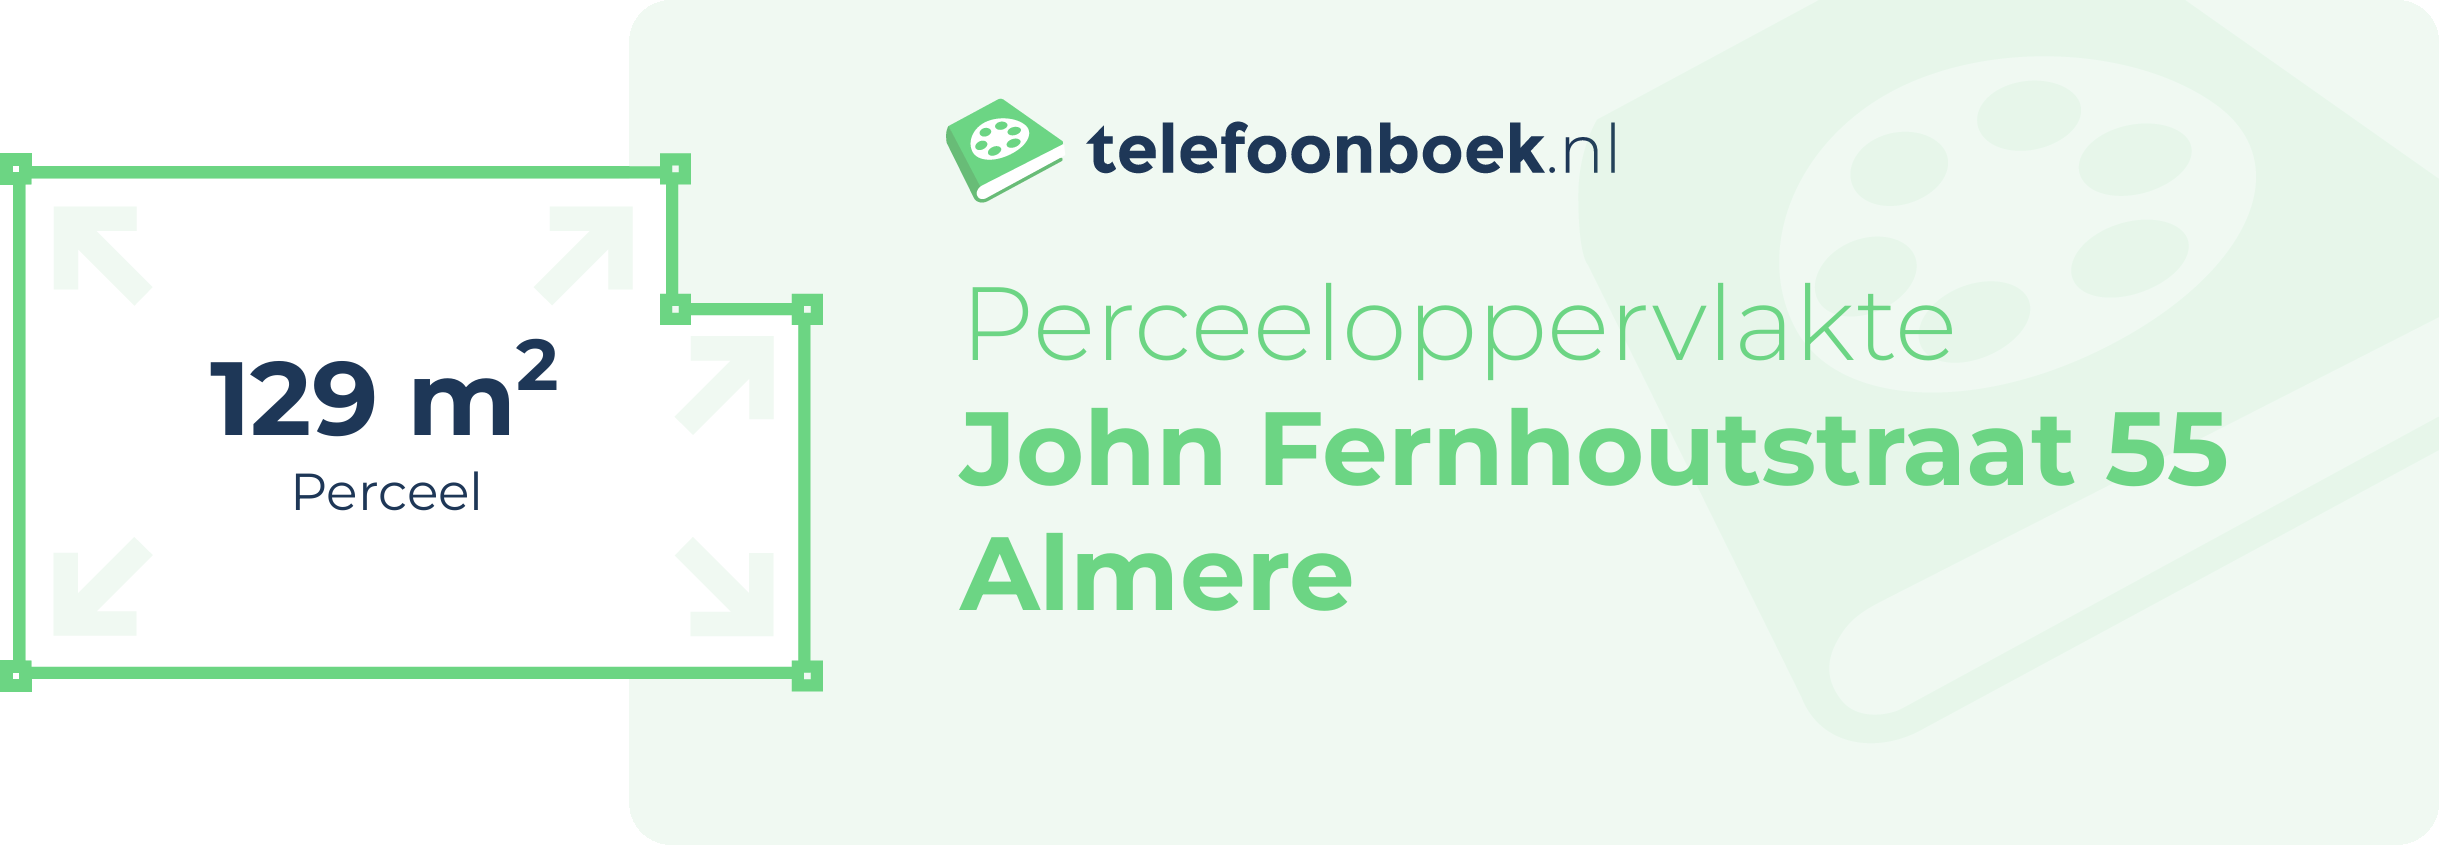 Perceeloppervlakte John Fernhoutstraat 55 Almere